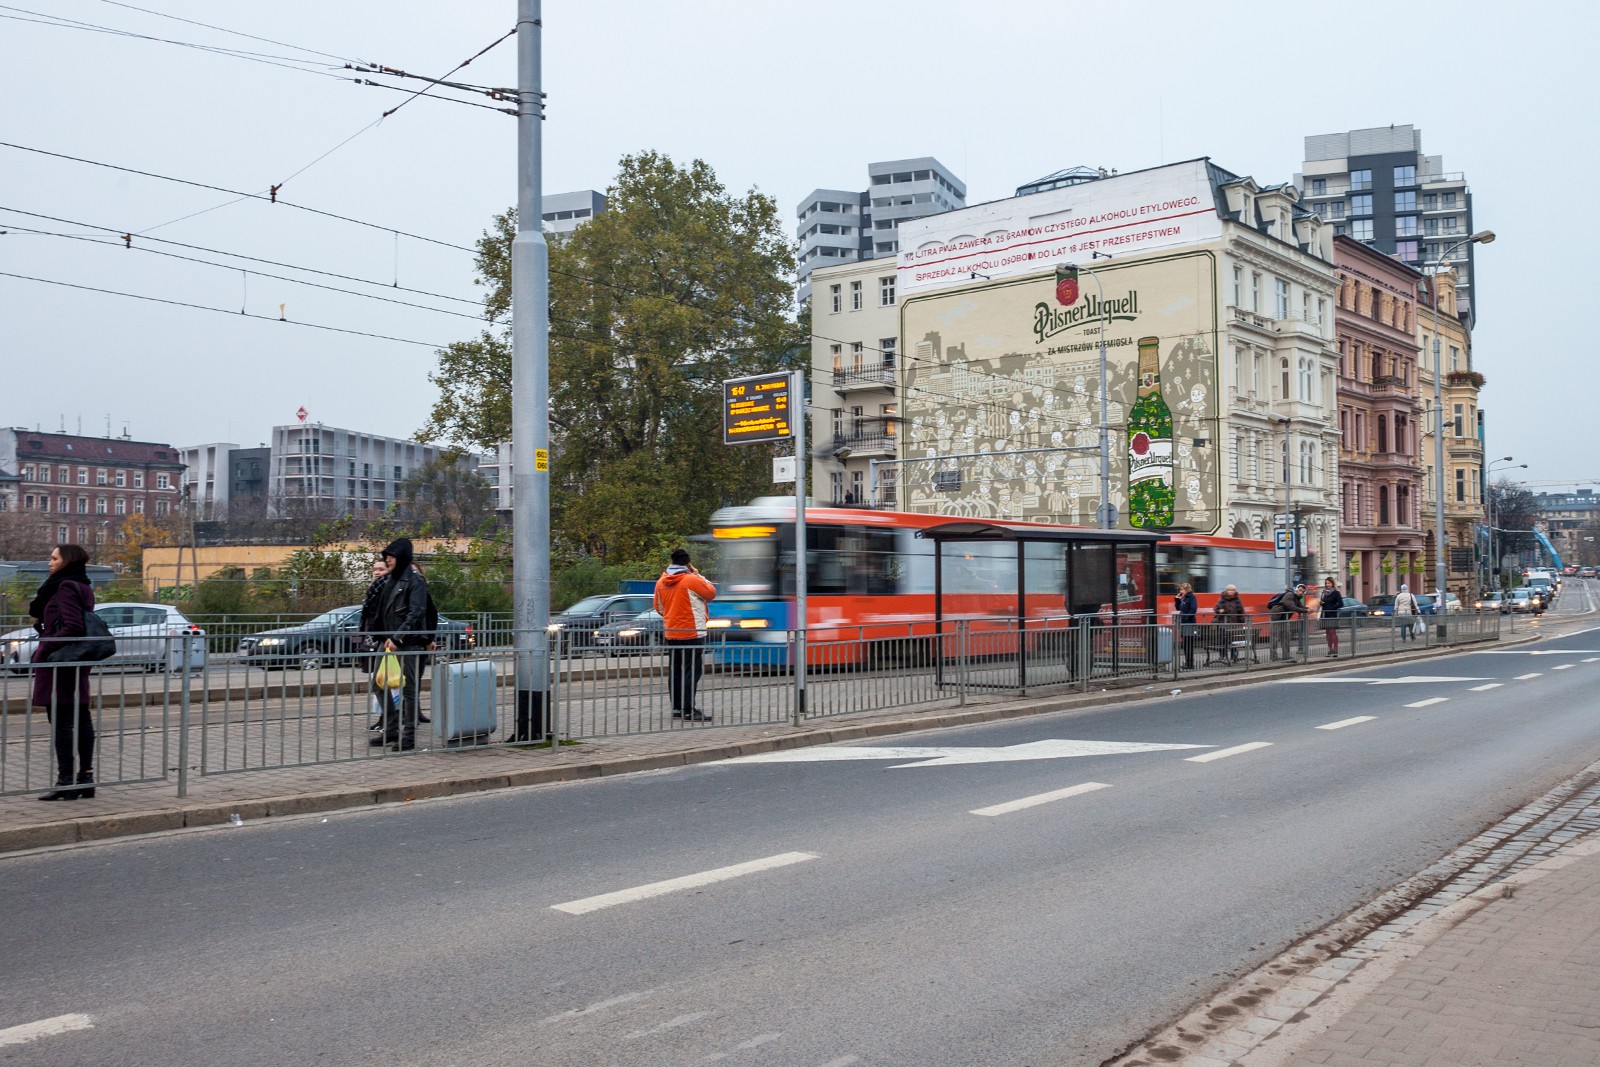 Graffiti Werbung an der Wand von Podwale Straße 7 in Wrocław Werbung für die Marke Pilsner Urquell | Pilsner Urquell | Portfolio